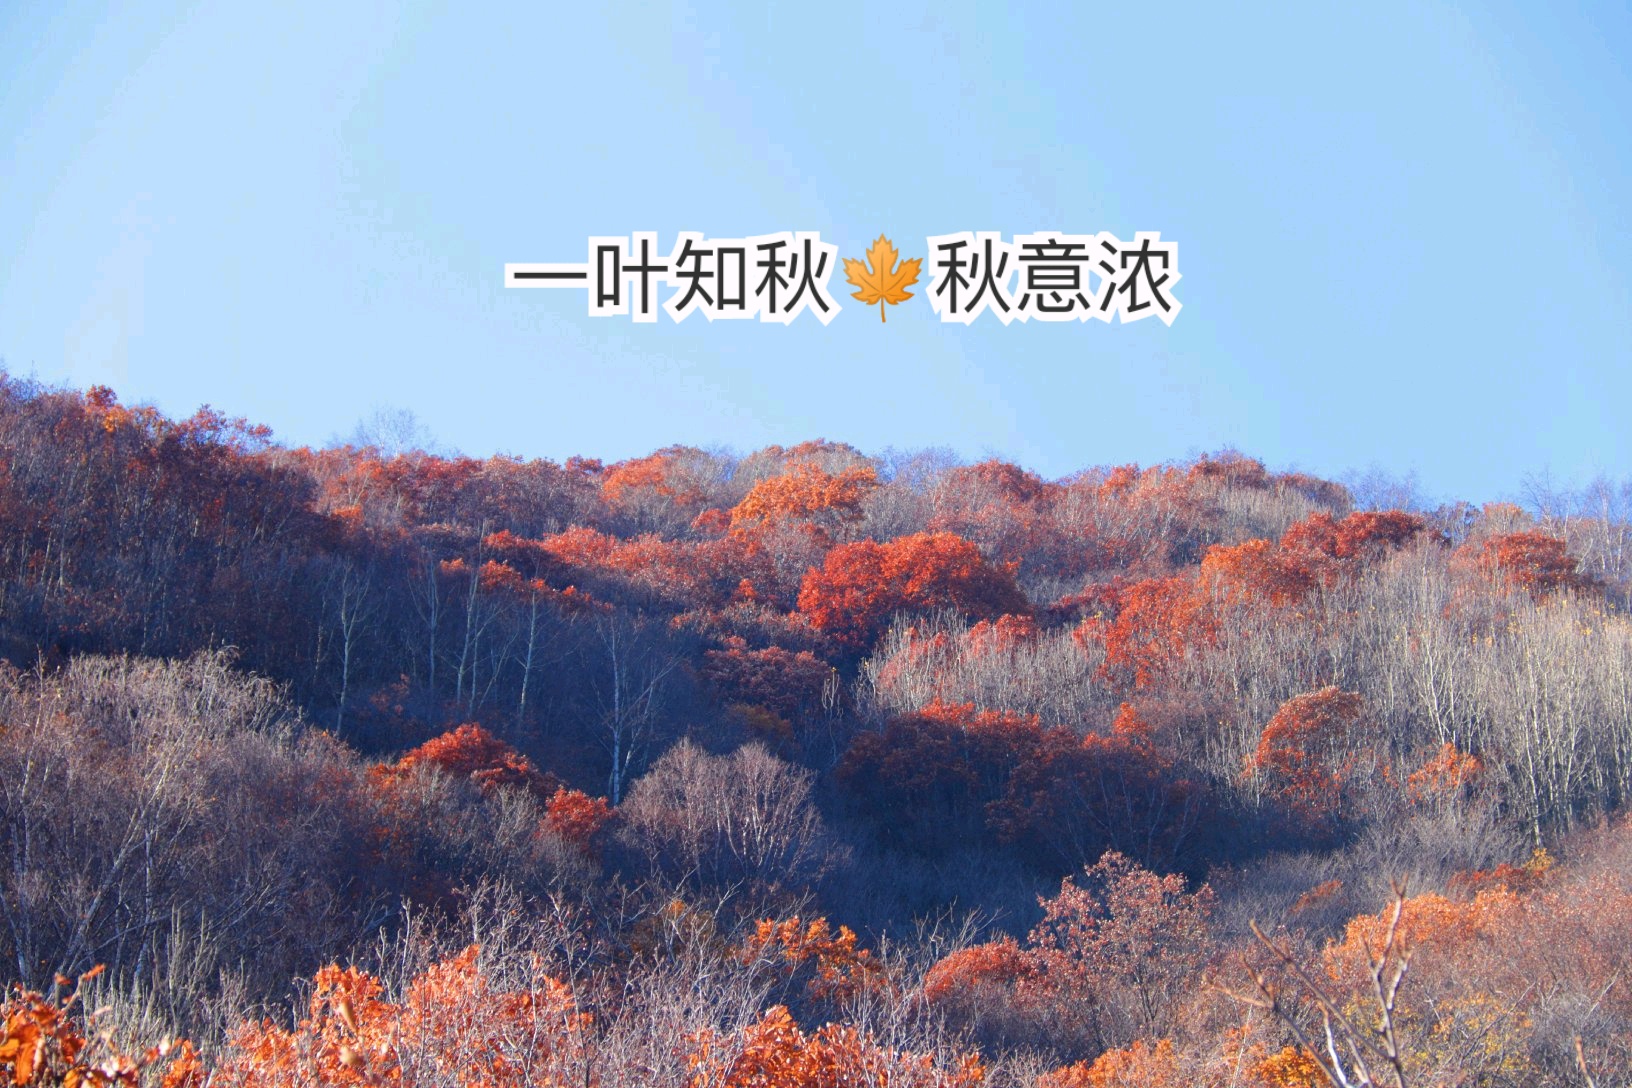 北京周边赏秋！一叶知秋秋意浓-北京喇叭沟原始森林公园攻略